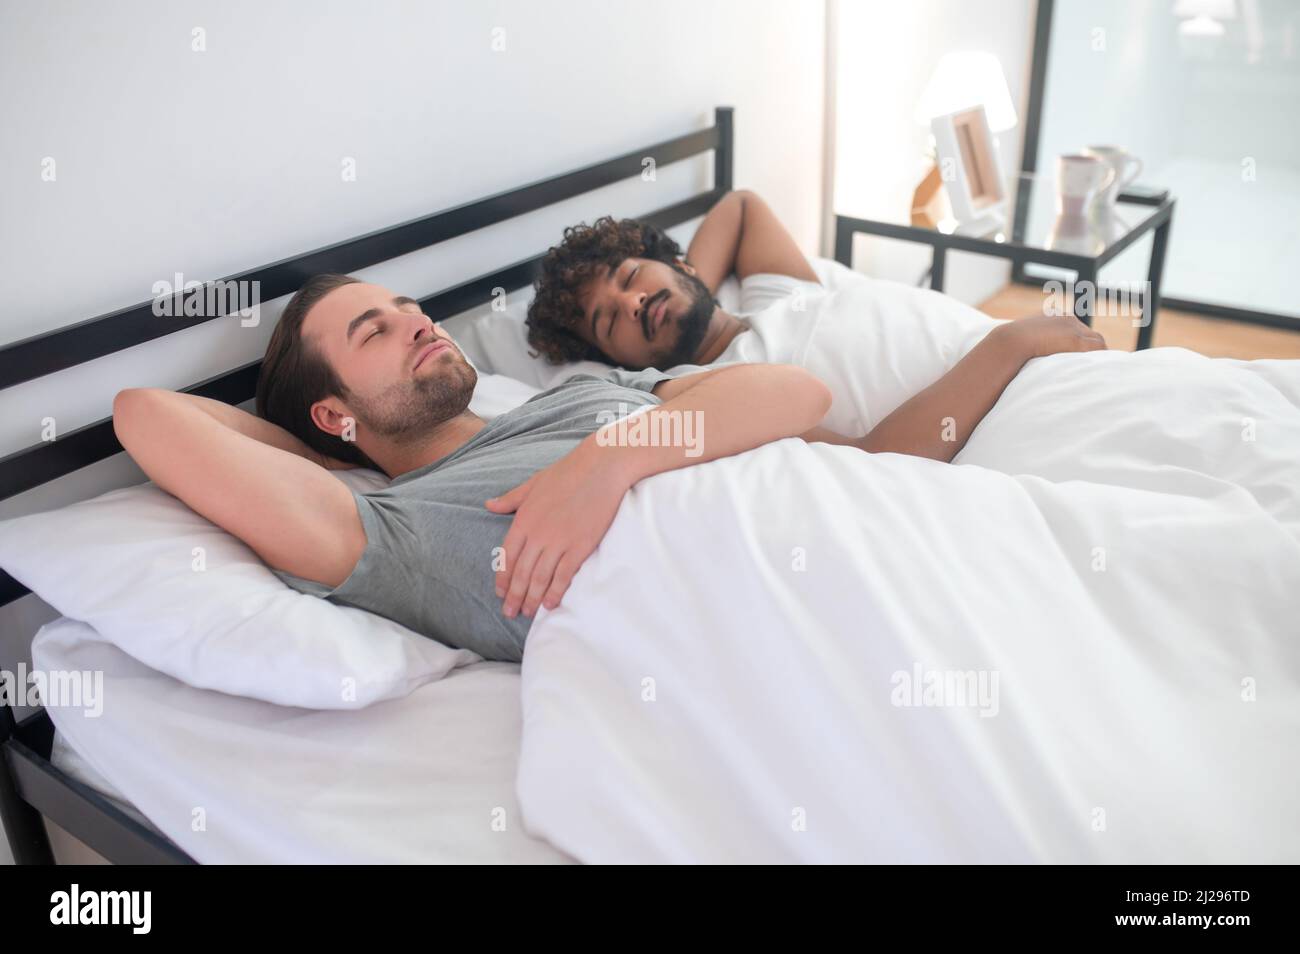 Gay men bed immagini e fotografie stock ad alta risoluzione - Alamy